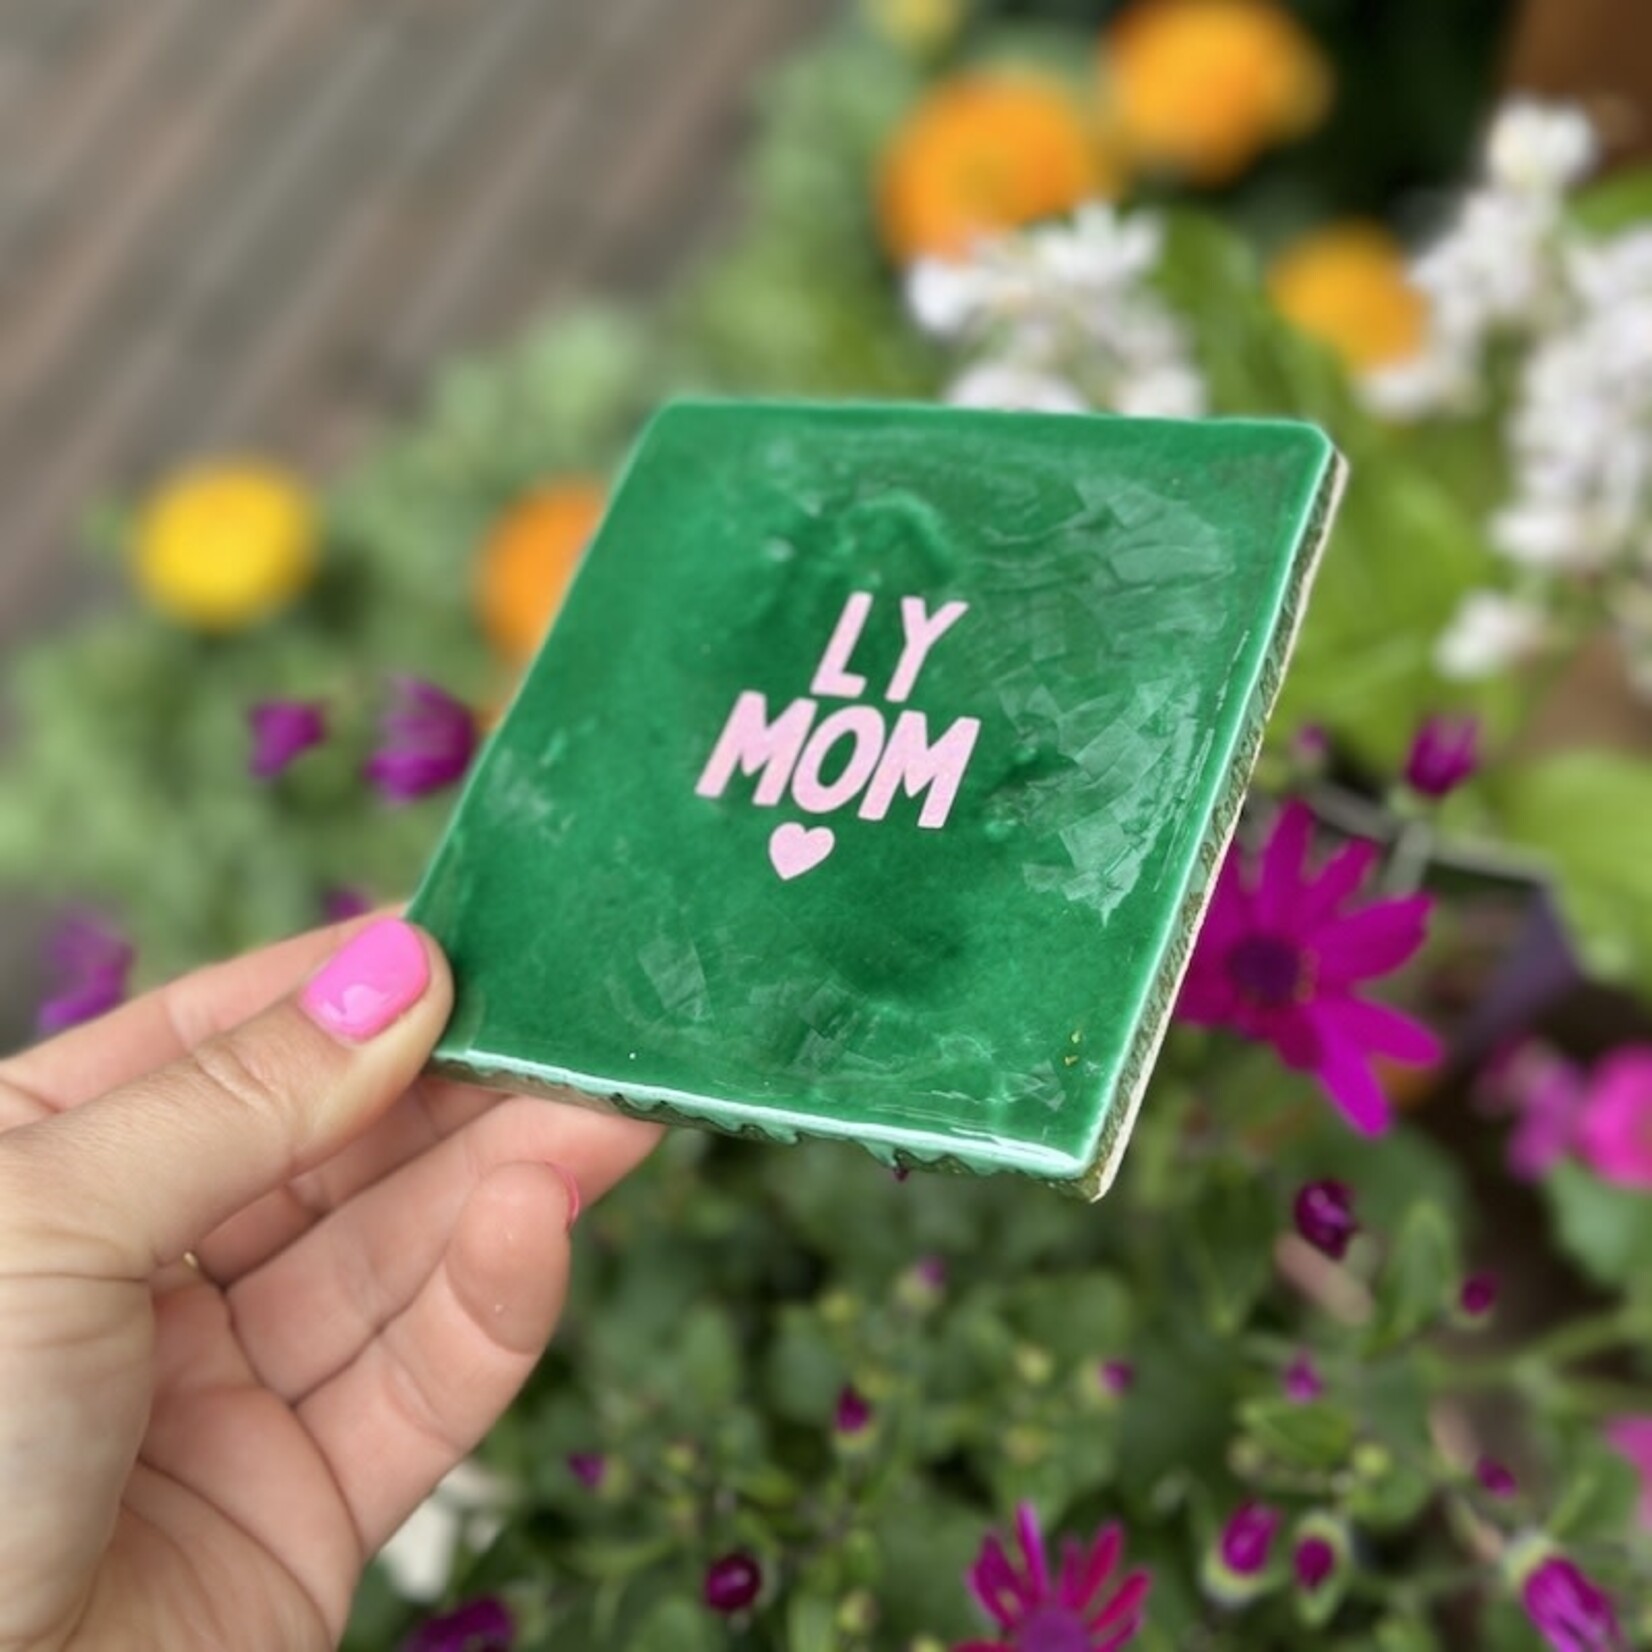 Bludd Tegeltje - LY mom, groen met roze glitter